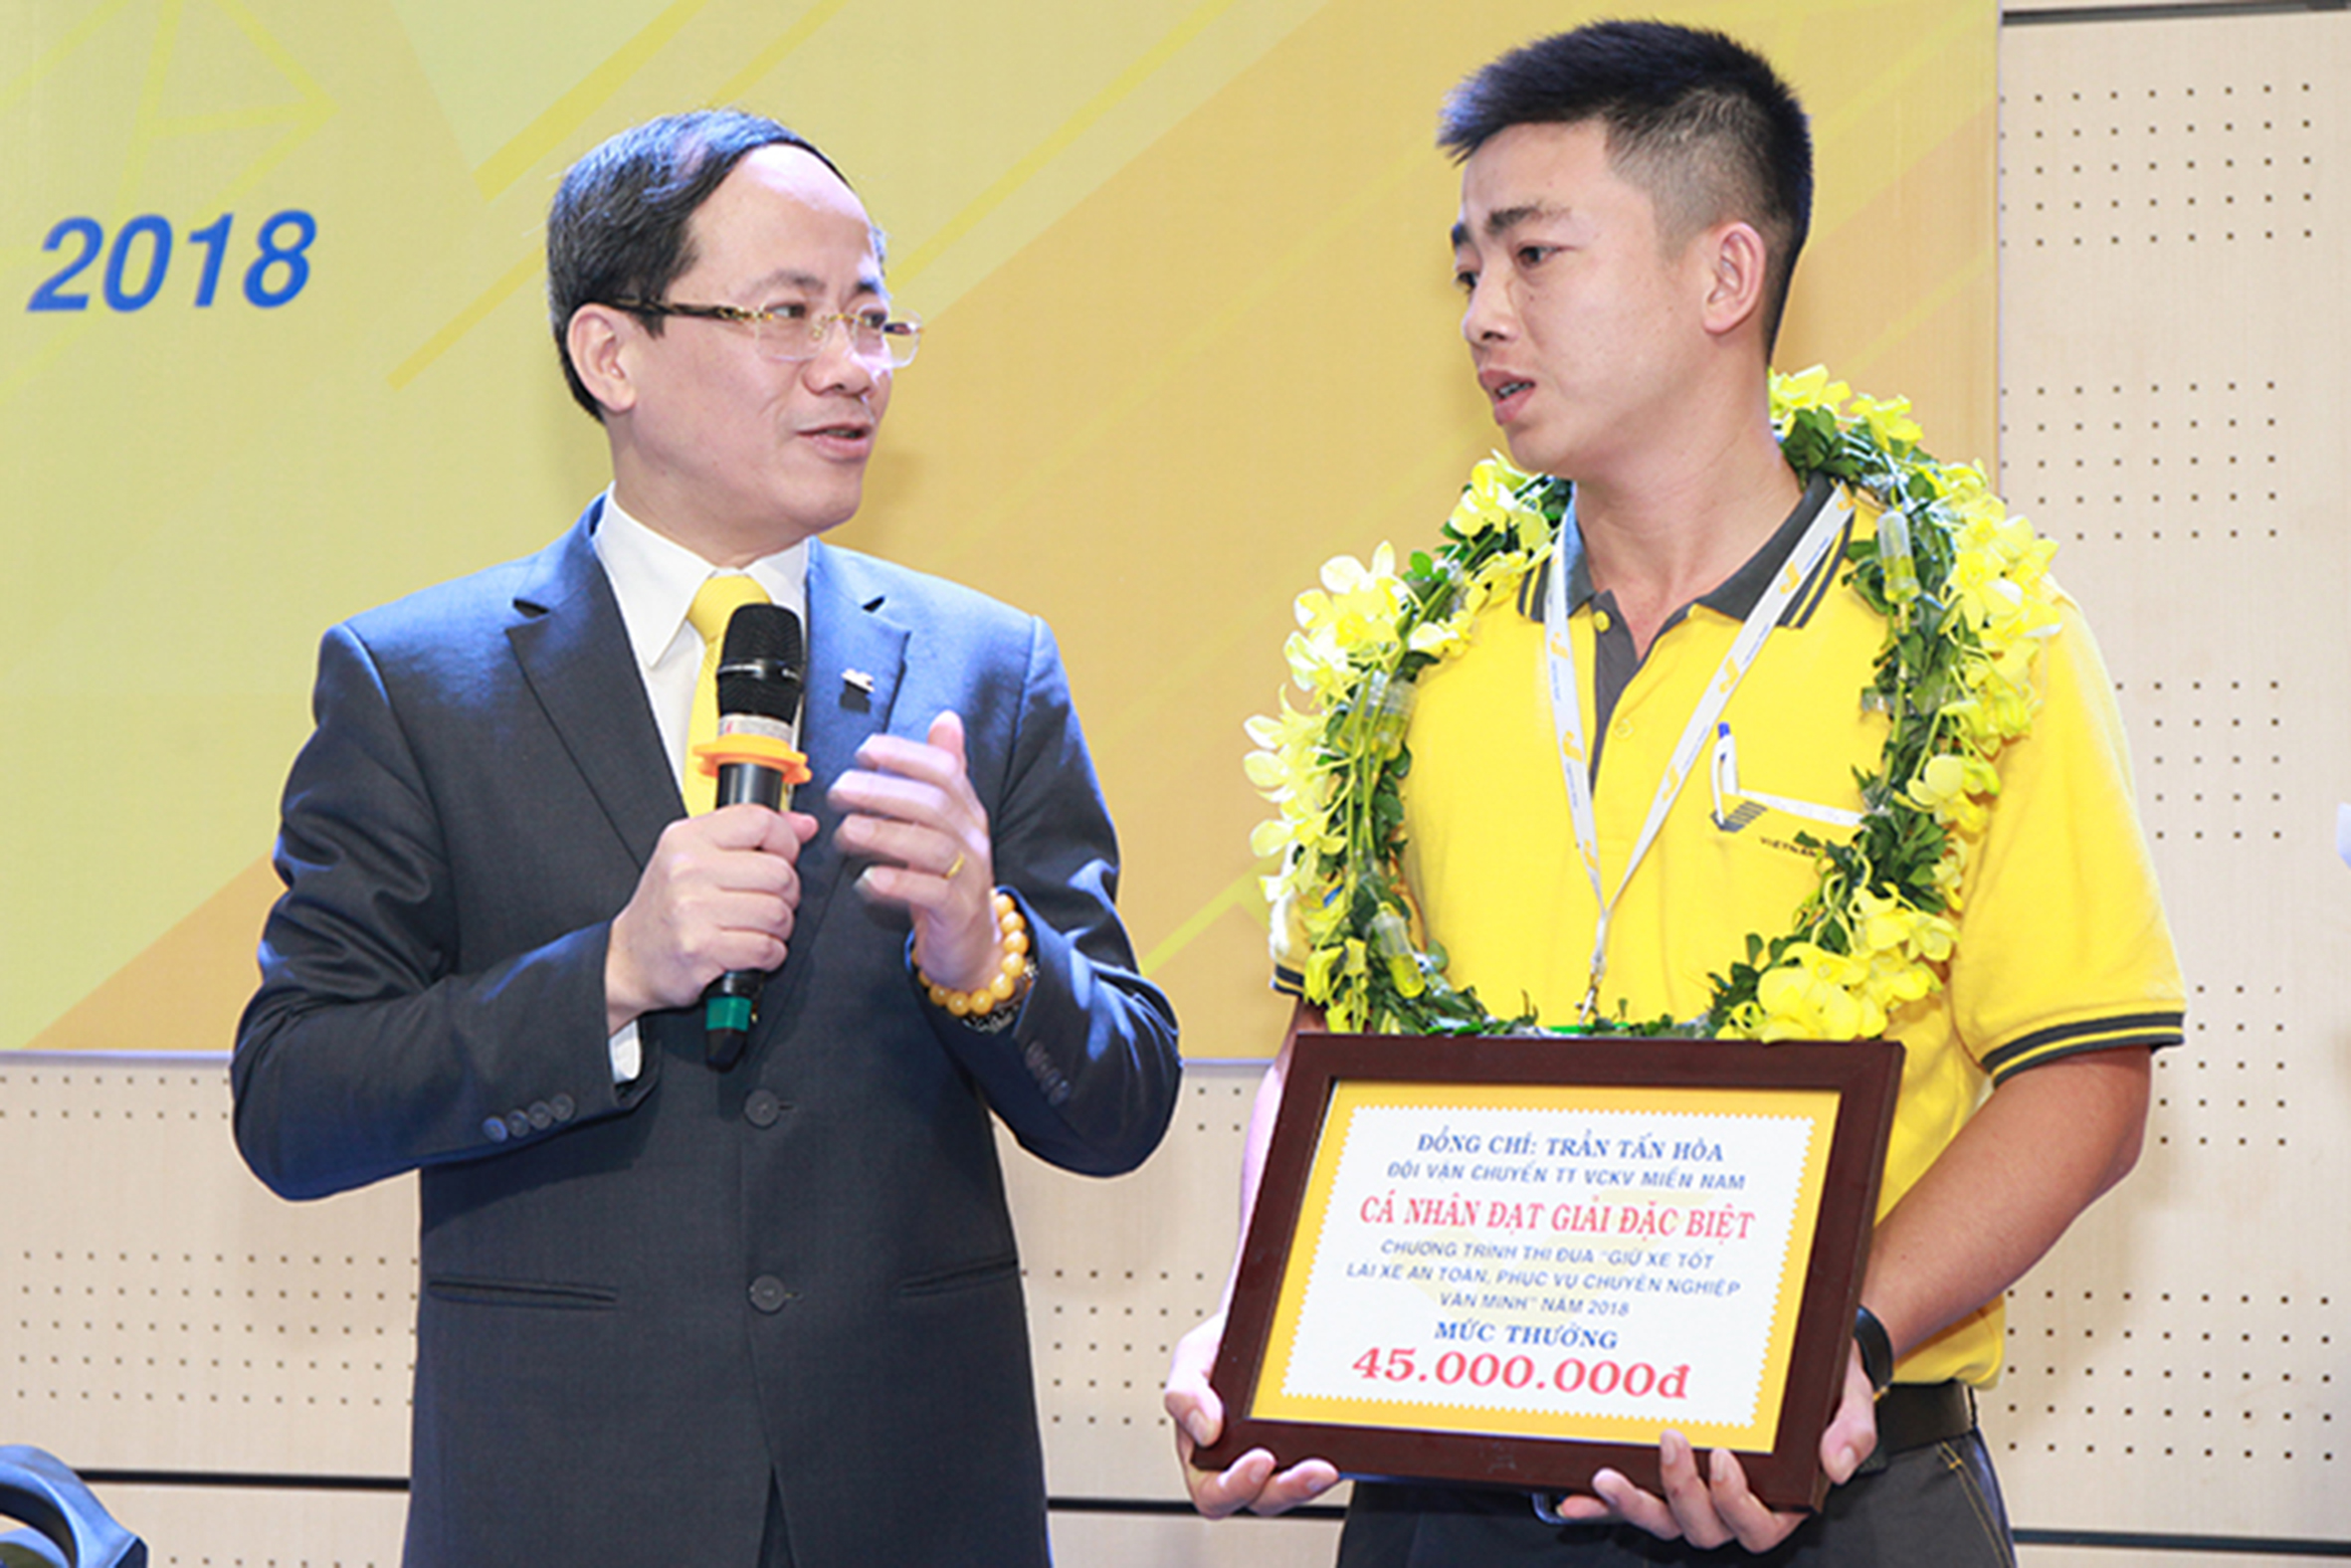 Anh Trần Tấn Hòa nhận giải đặc biệt trong chương trình Thi đua “Lái xe giỏi – Giữ xe an toàn” năm 2018.